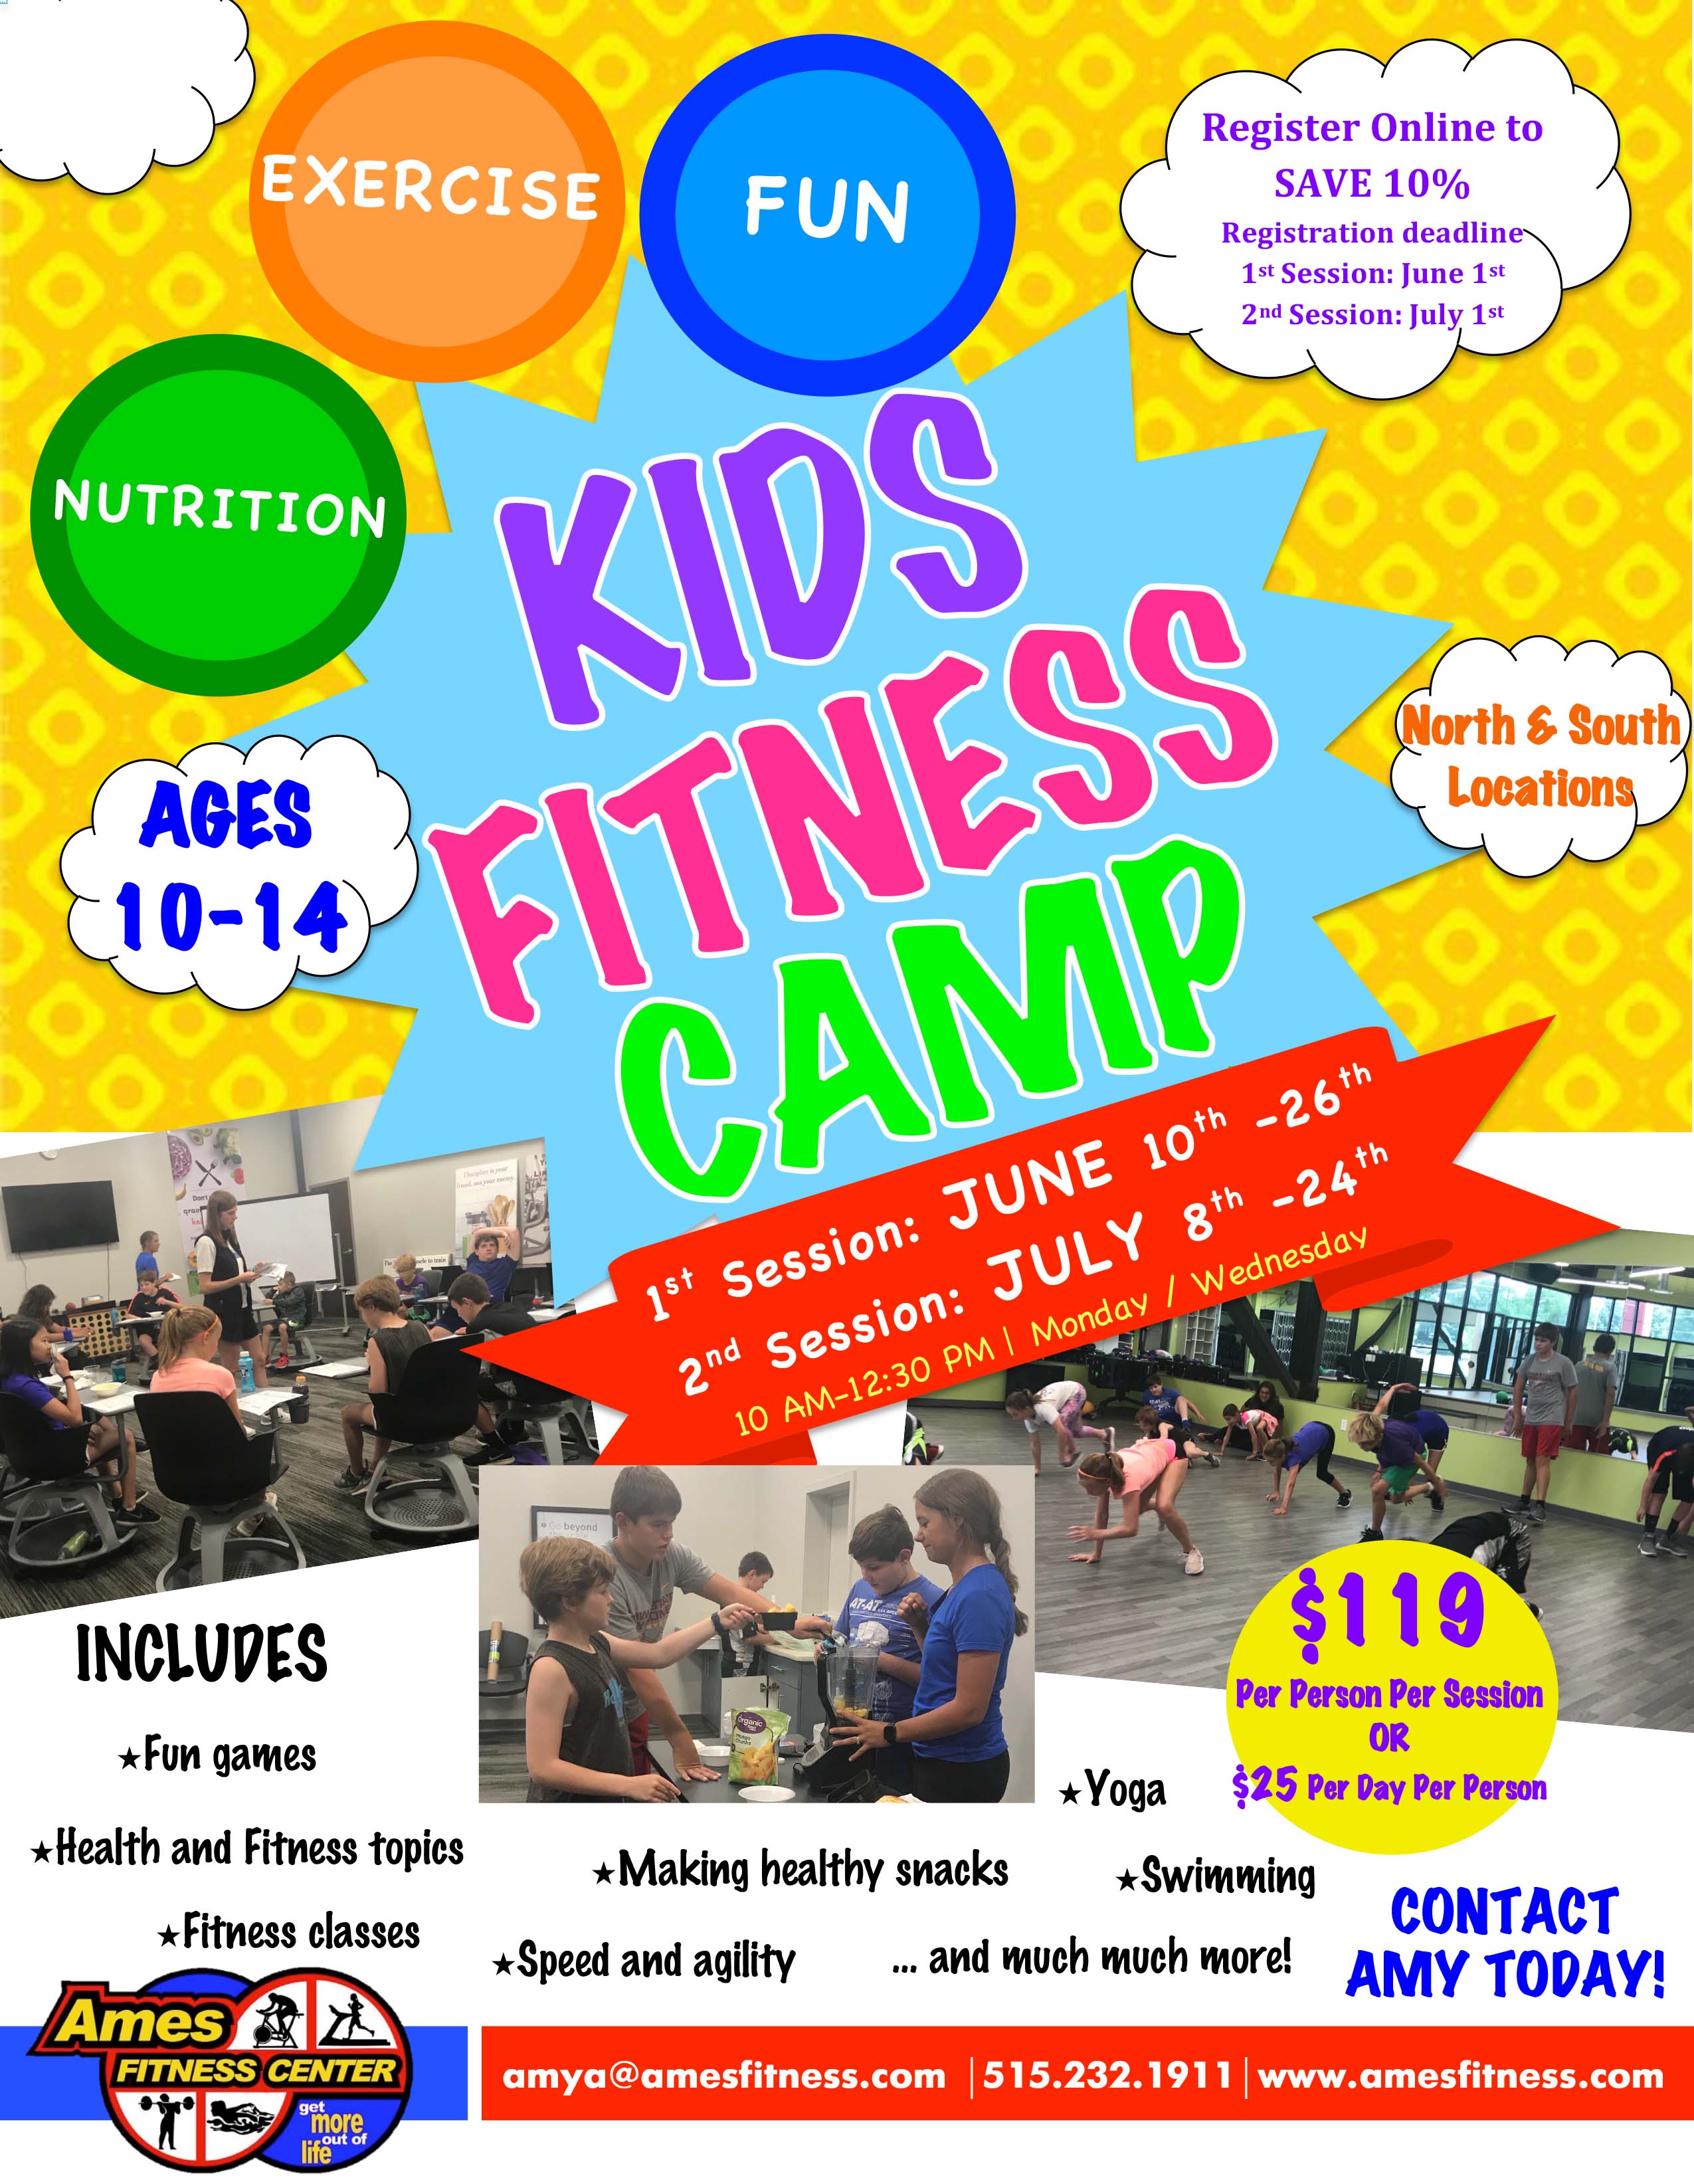 Kids Fitness Camp